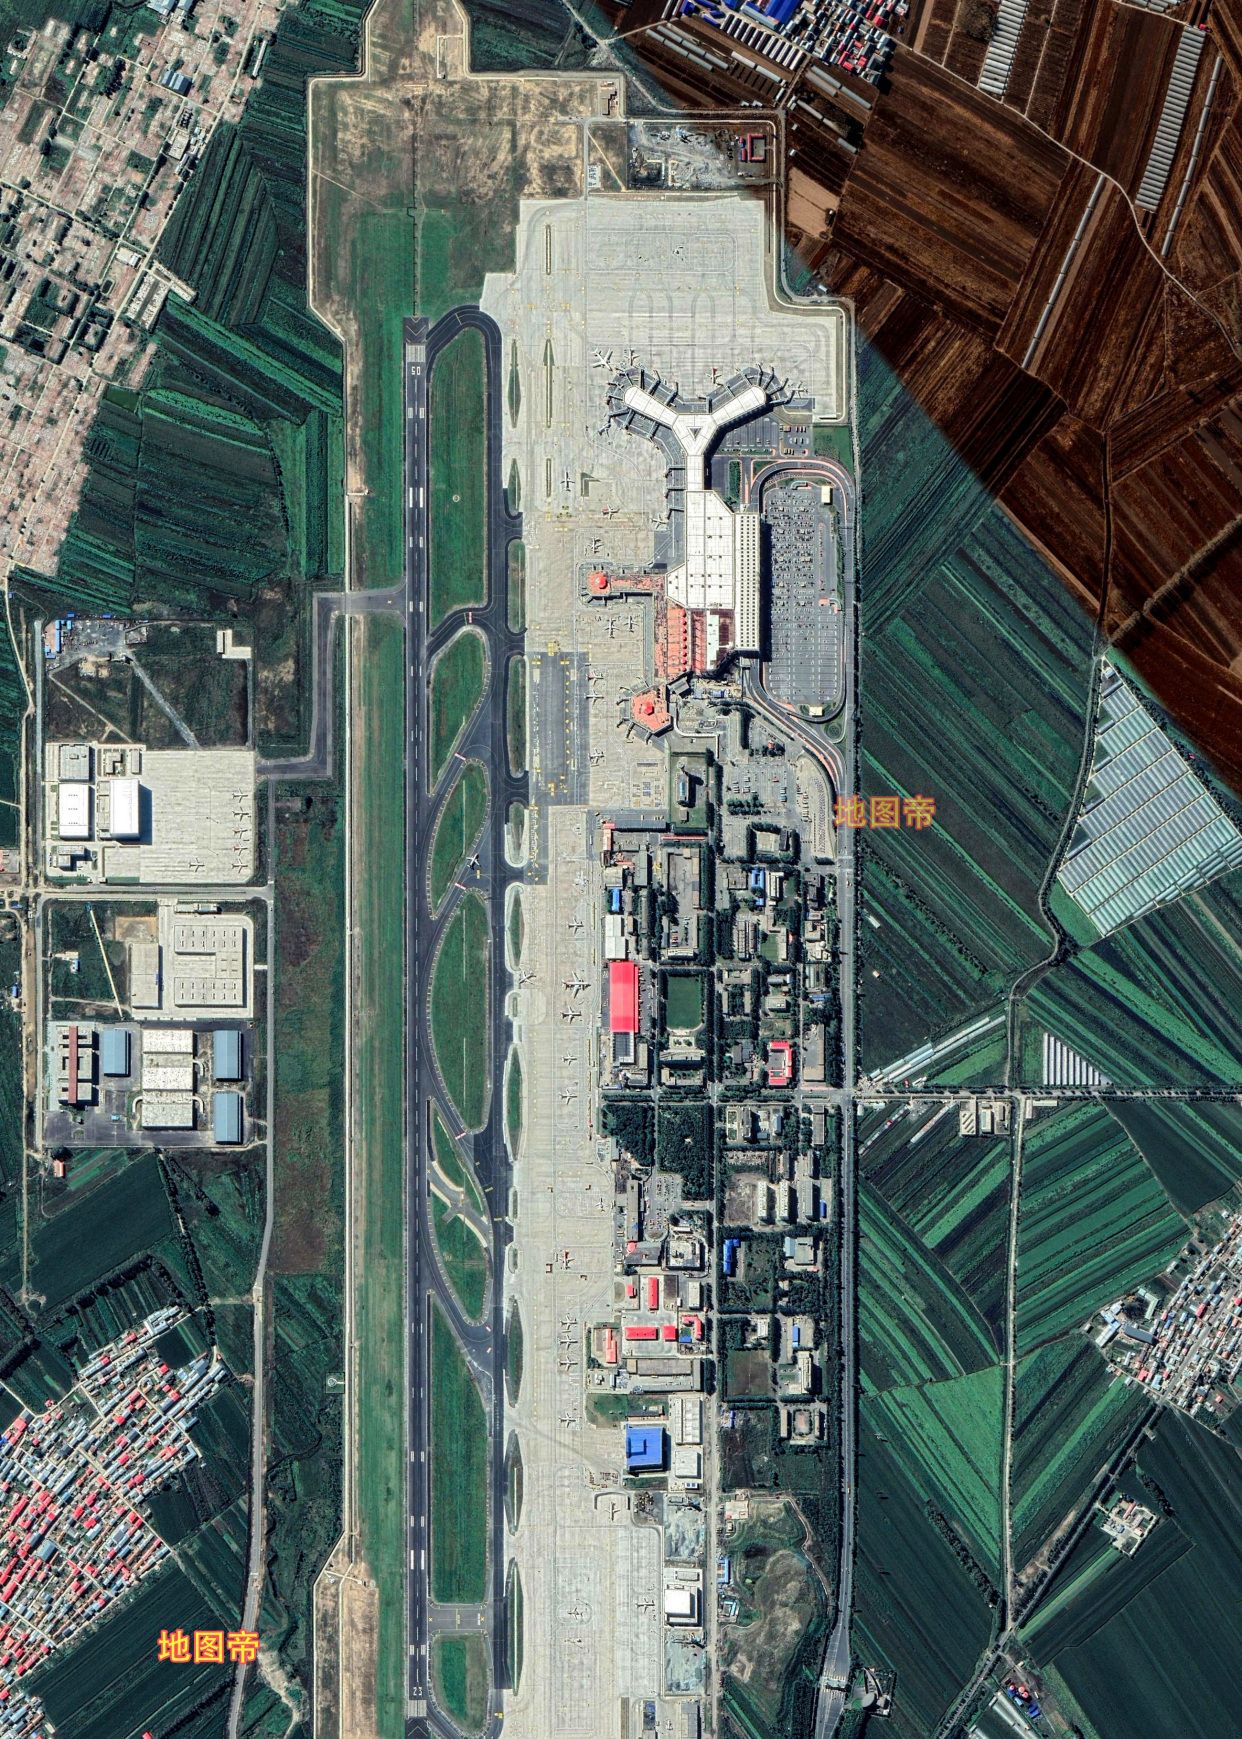 哈尔滨太平国际机场T2航站楼投入使用